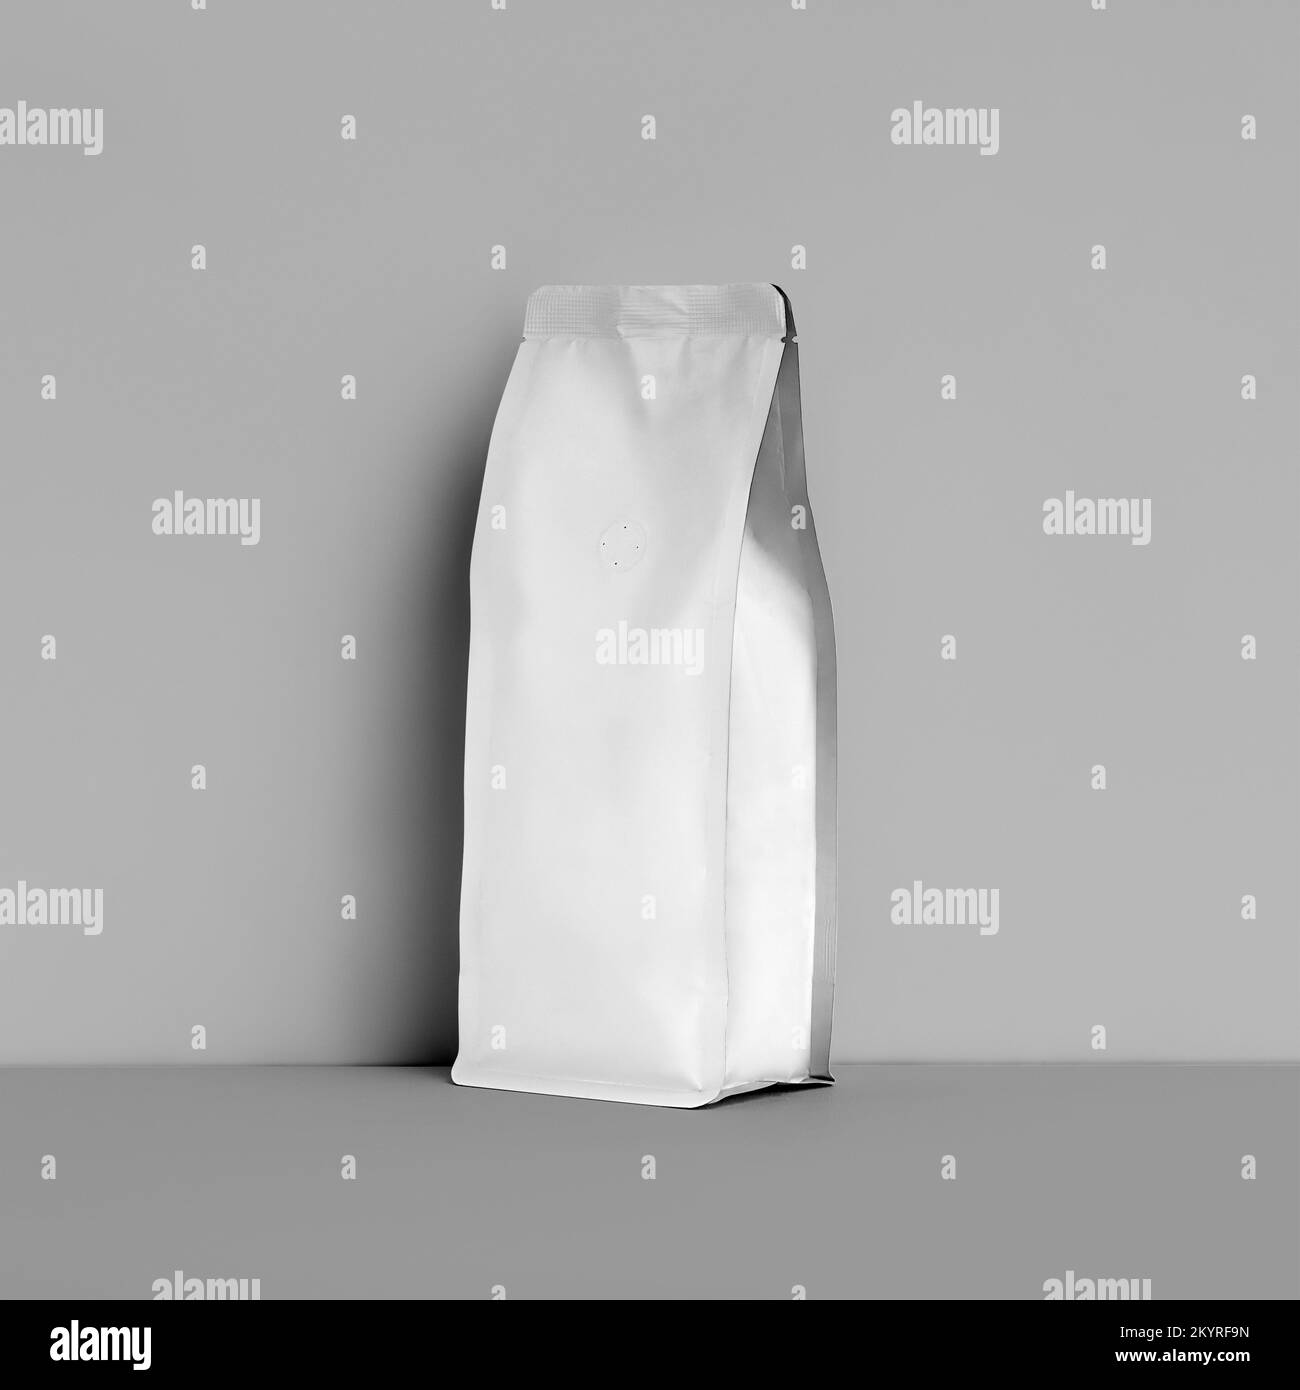 Modell der weißen Zwickelverpackung für Kaffeebohnen, Kaffeebeutel, isoliert auf Wandhintergrund. Schablonenbeutel mit Entgasungsventil, Beutel für Tee, für Stockfoto